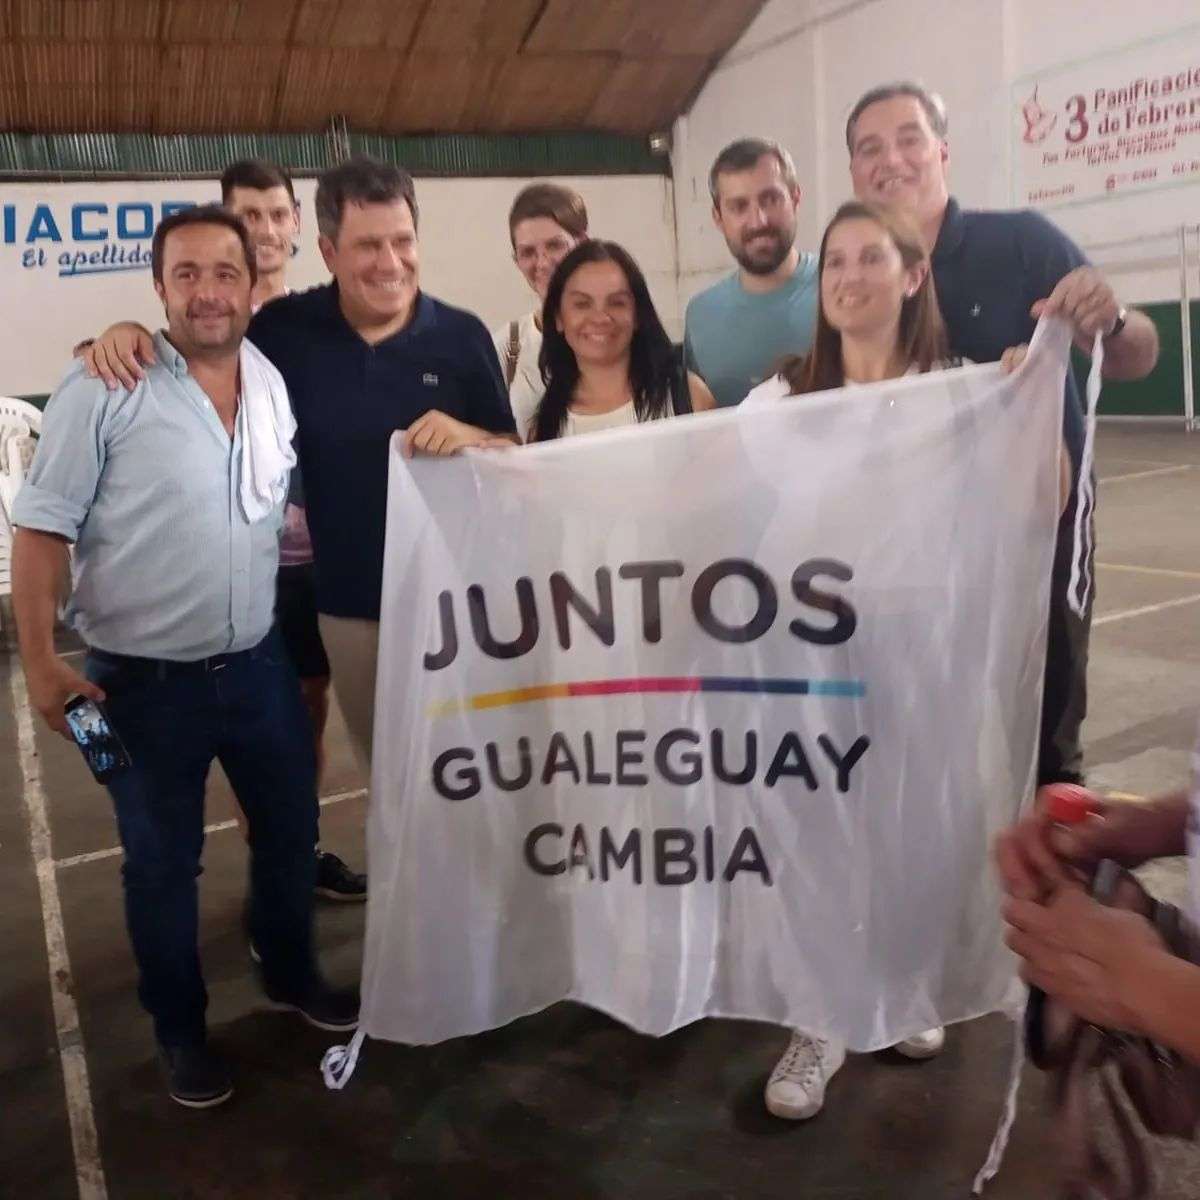 Gualeguay Cambia acompañó a Manes y Galimberti en Chajarí